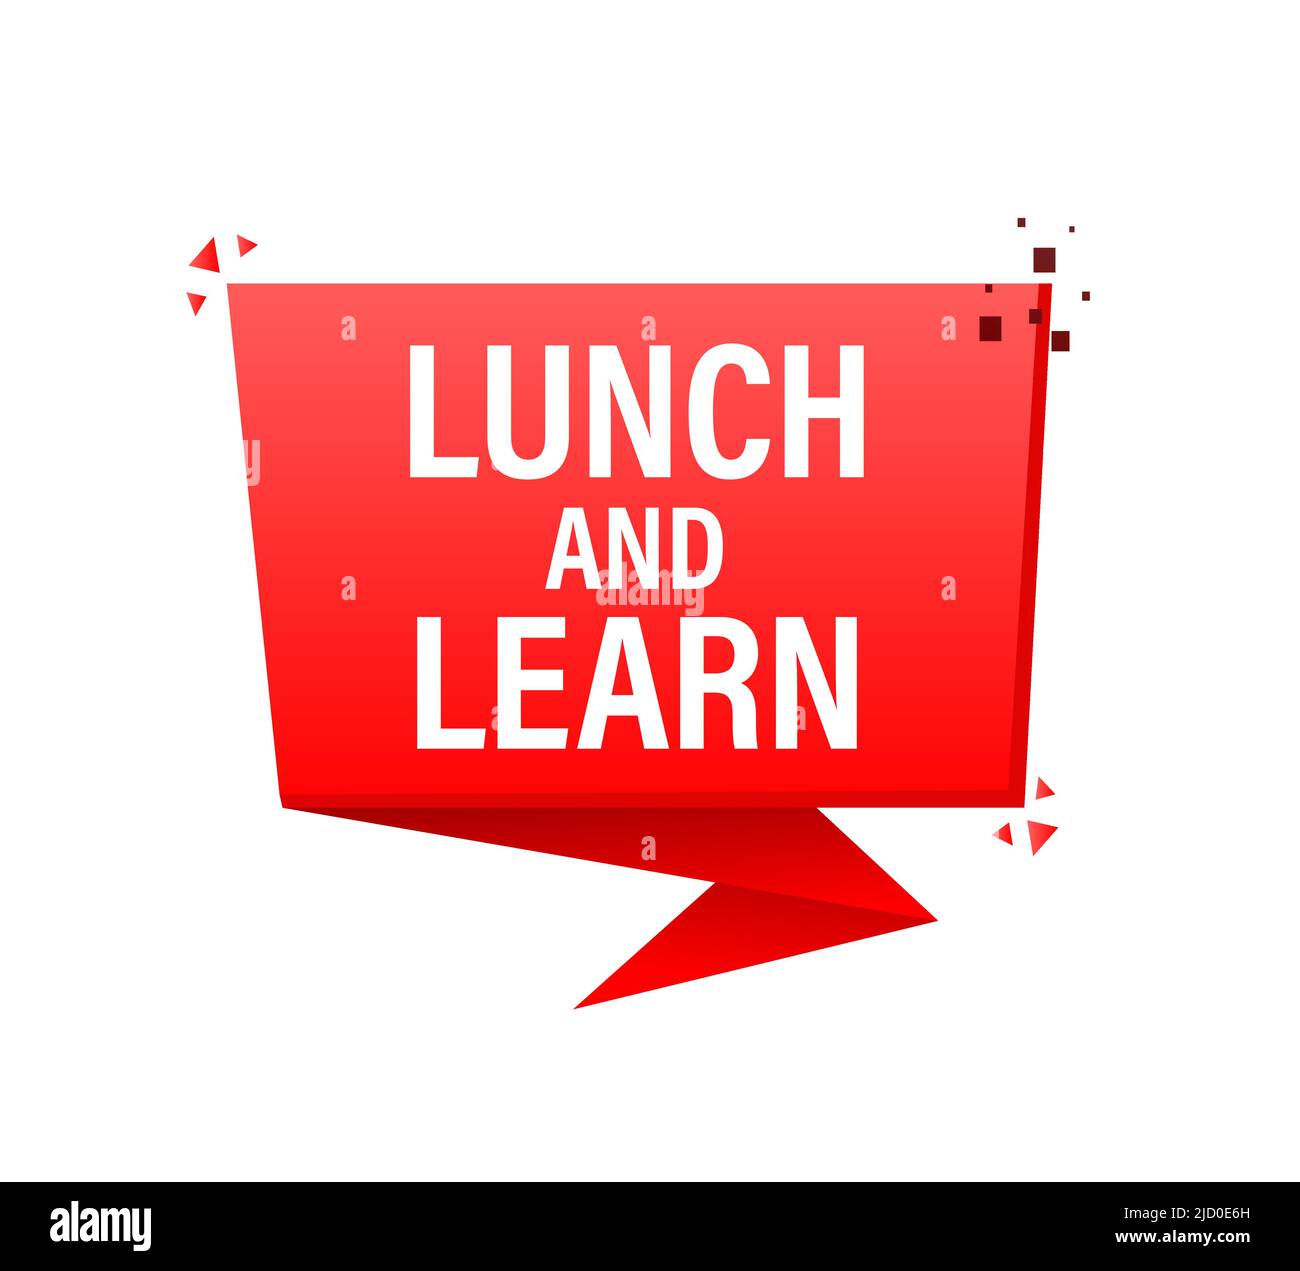 Bouton rouge avec déjeuner rouge et apprendre. Illustration vectorielle. Illustration de Vecteur